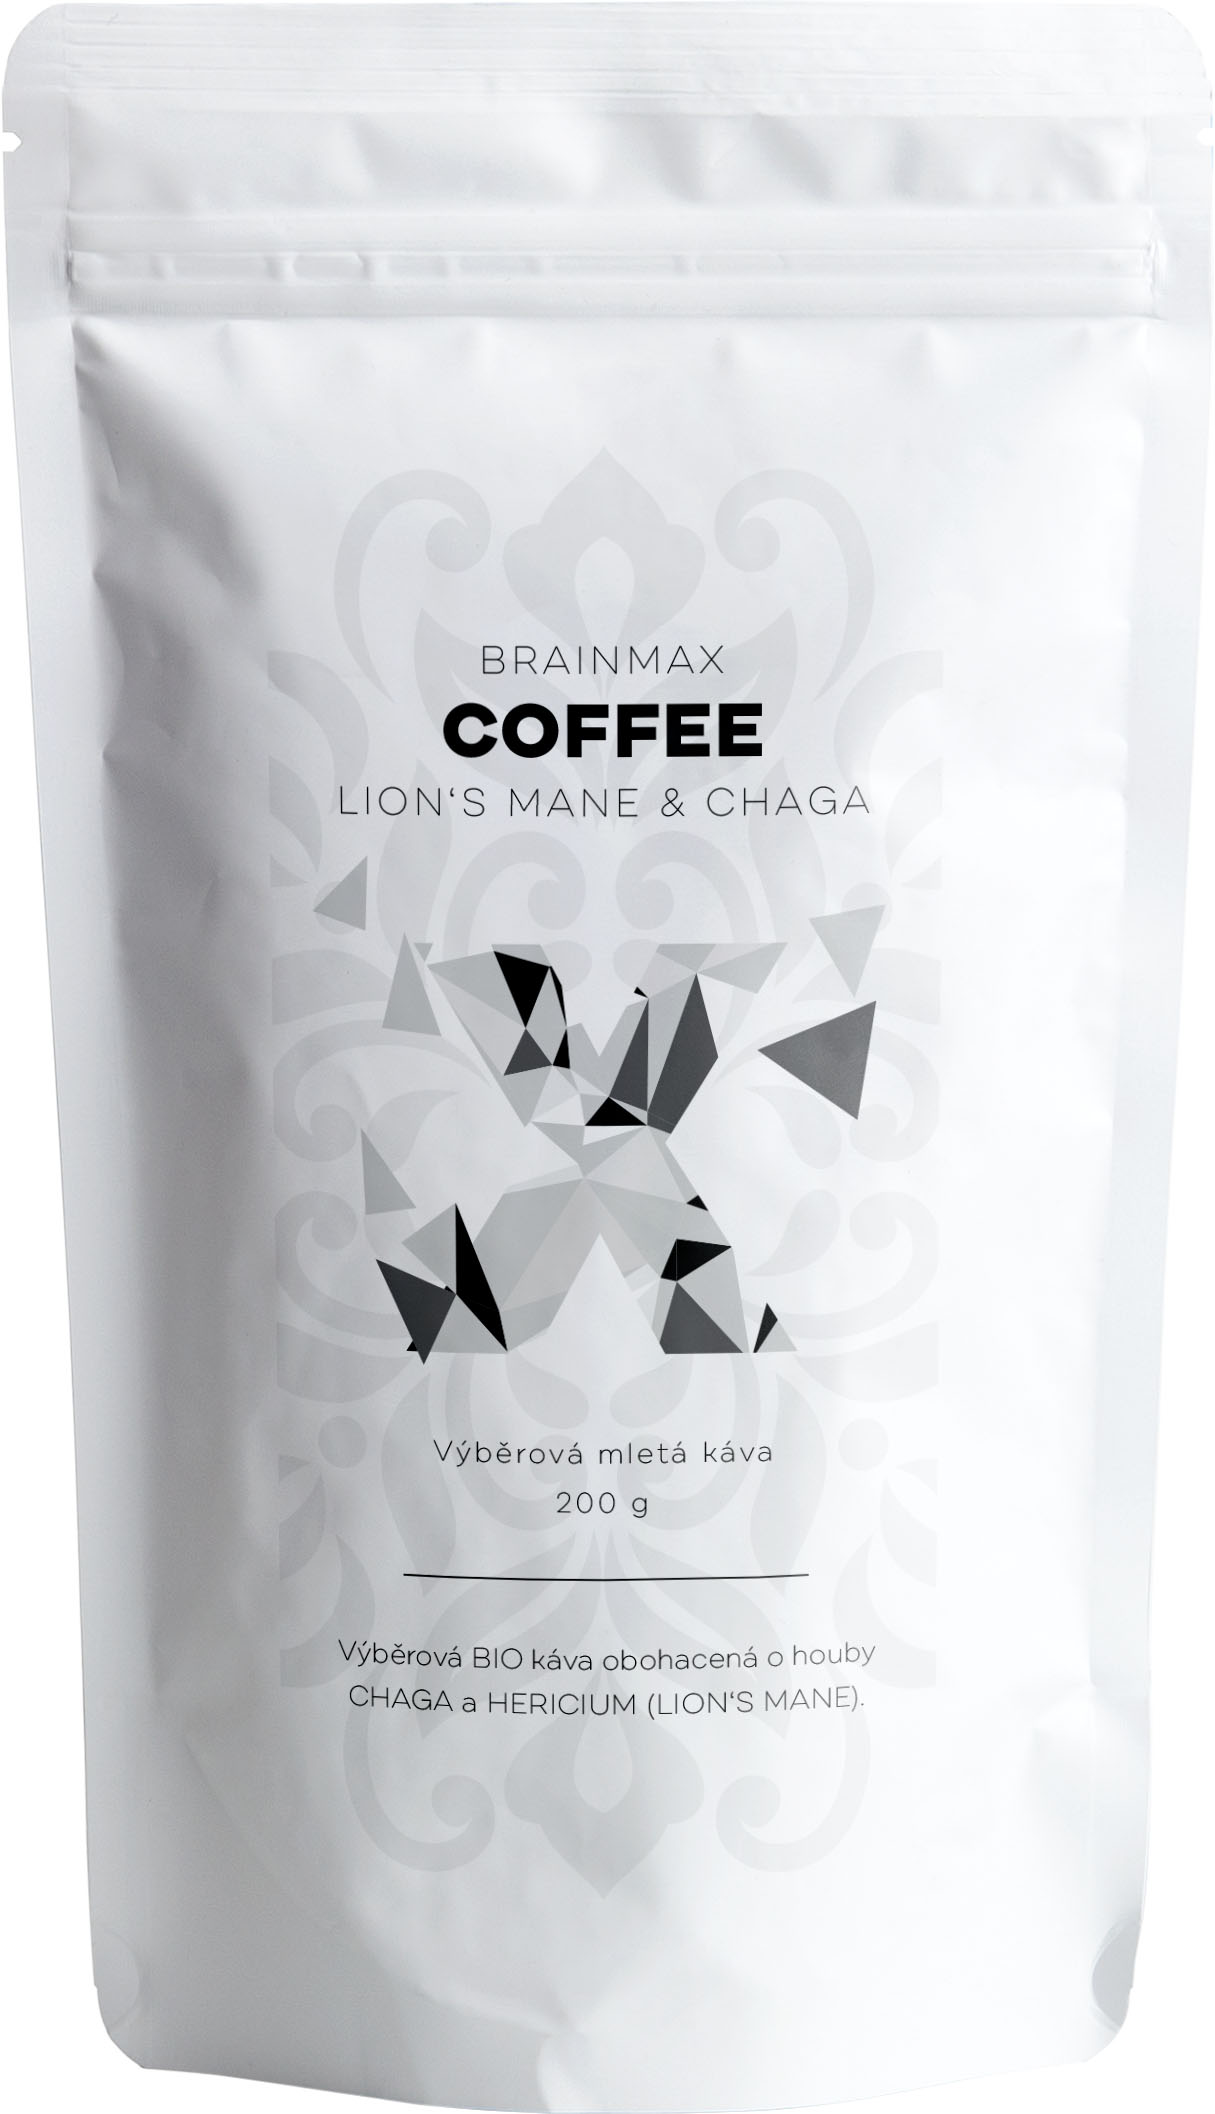 E-shop BrainMax Coffee, BIO Káva s medicinálnymi hubami, Lion's Mane & Chaga, 200g